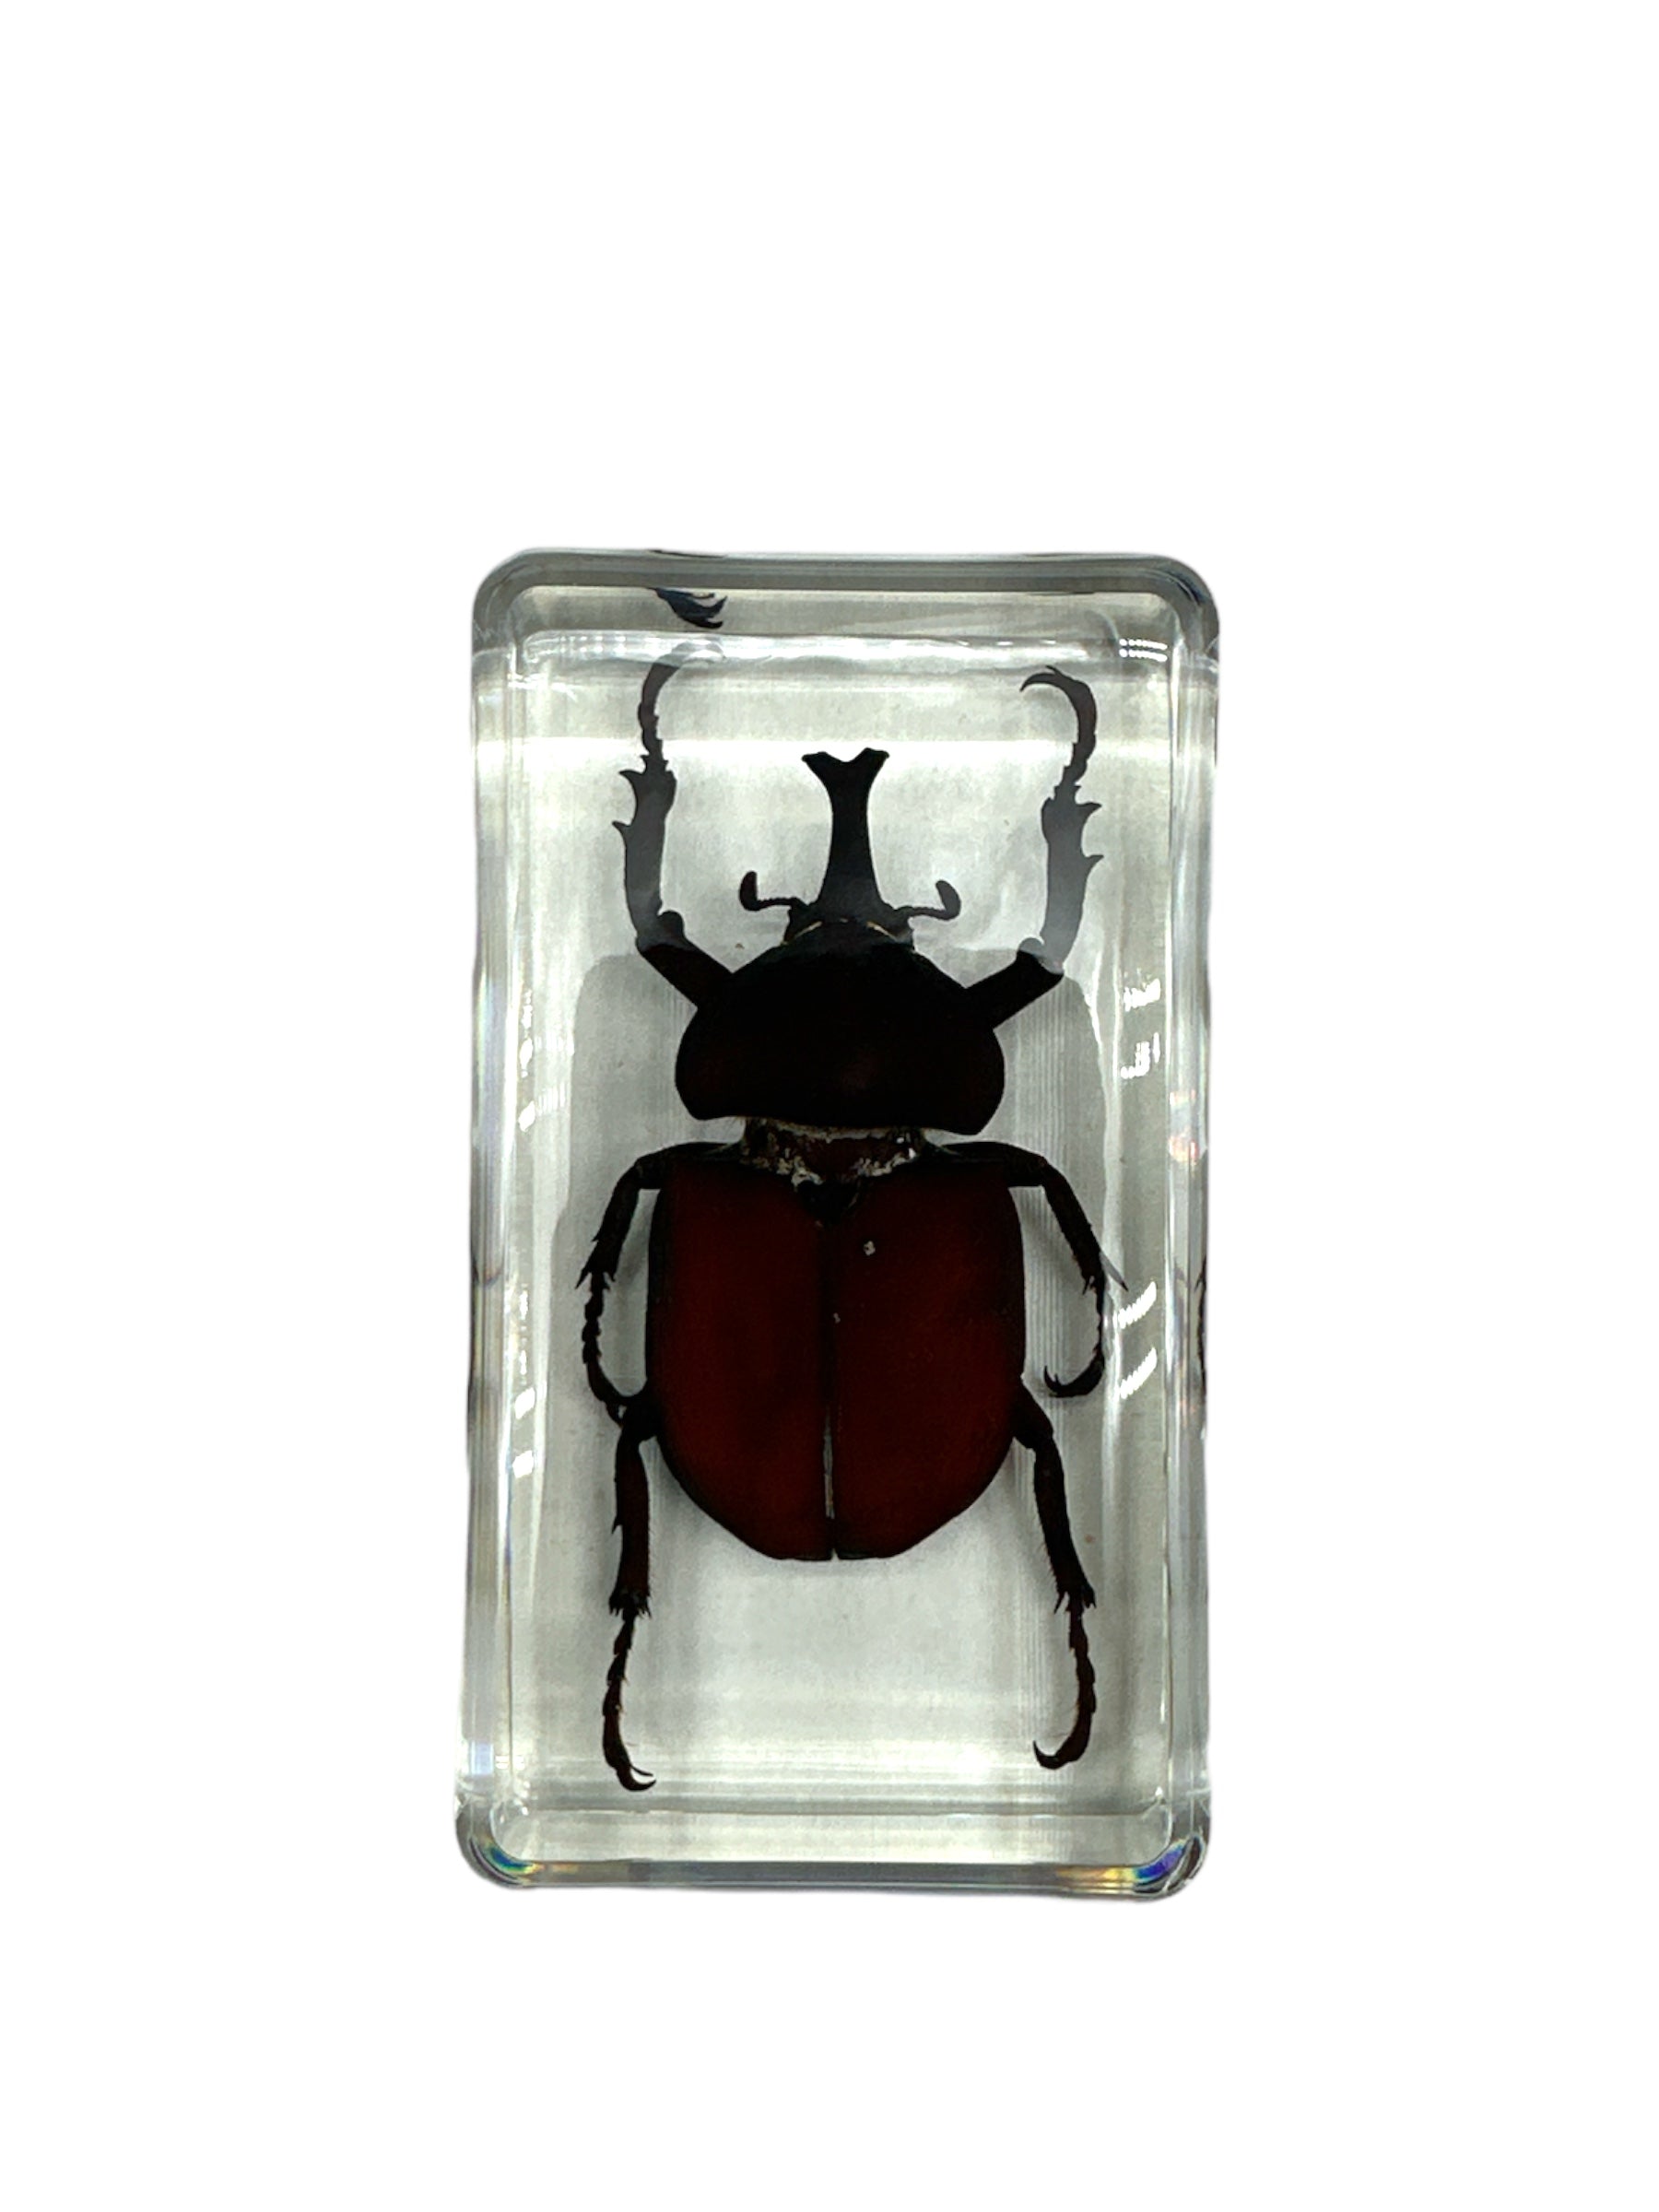 Unicorn Beetle - Specimen In Resin